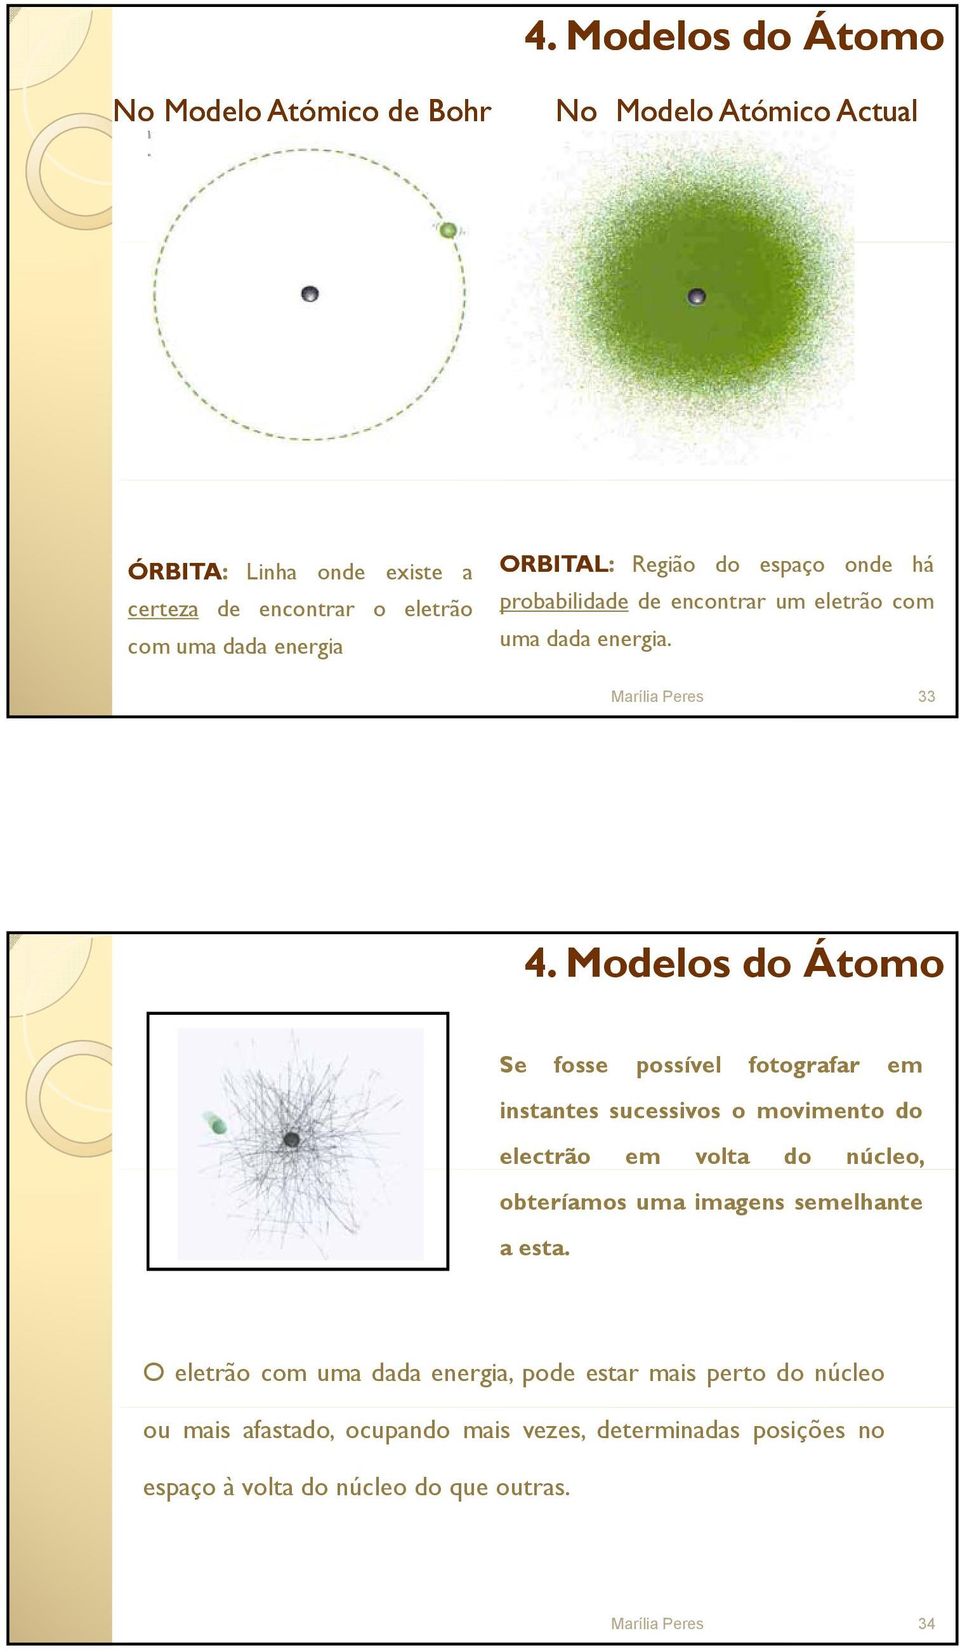 Modelos do Átomo Se fosse possível fotografar em instantes sucessivos o movimento do electrão em volta do núcleo, obteríamos uma imagens semelhante aesta.